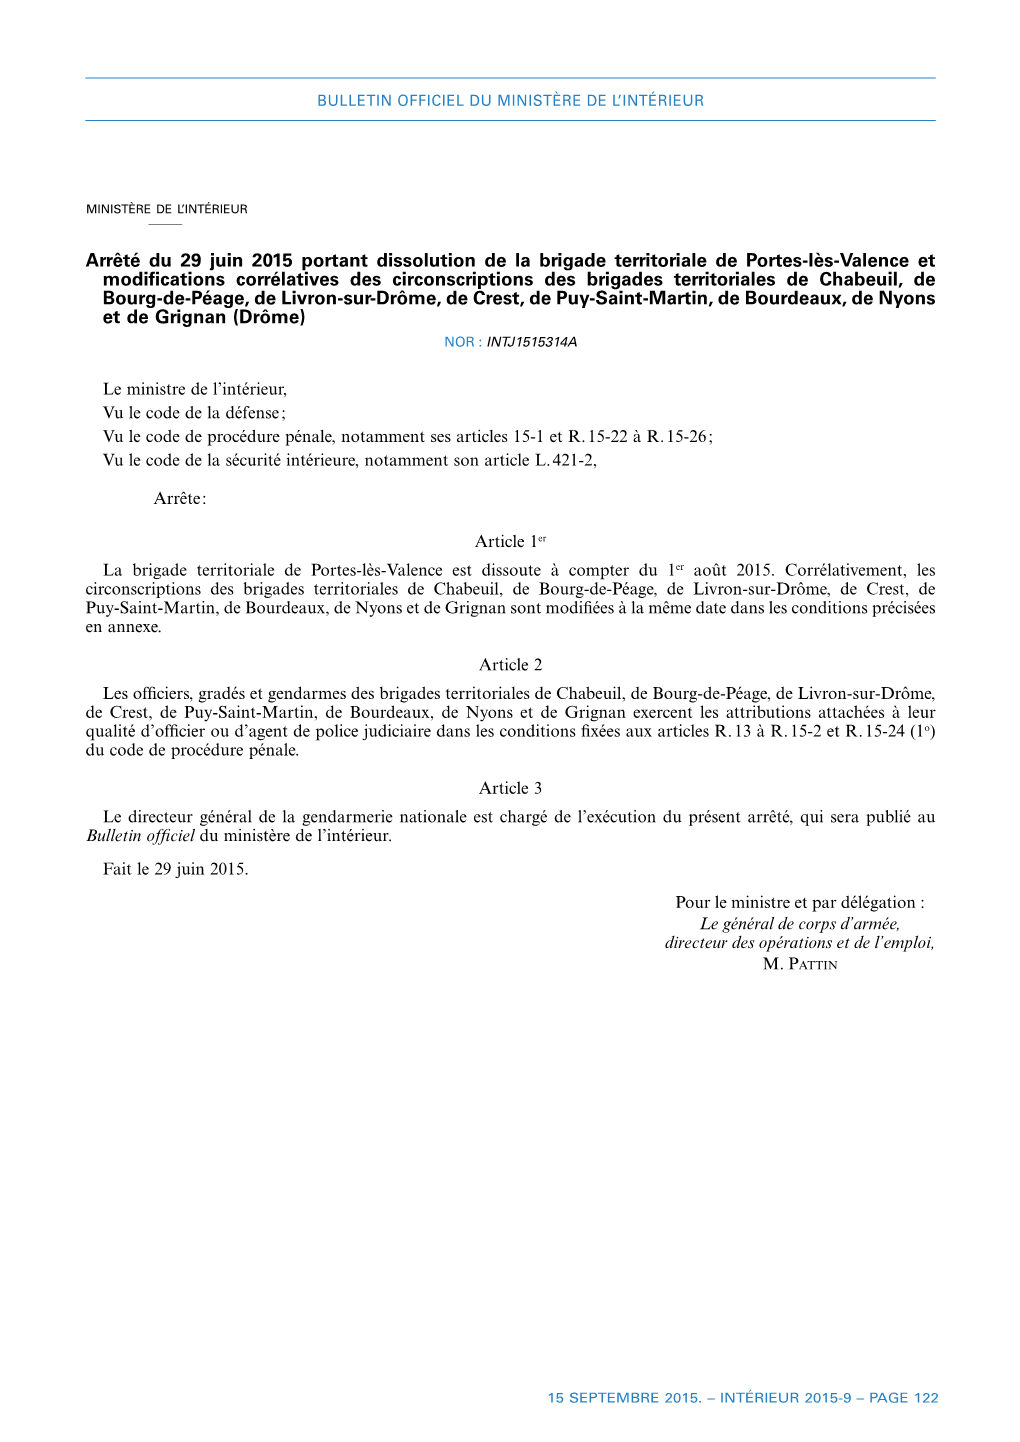 Arrêté Du 29 Juin 2015 Portant Dissolution De La Brigade Territoriale De Portes-Lès-Valence Et Modifications Corrélatives